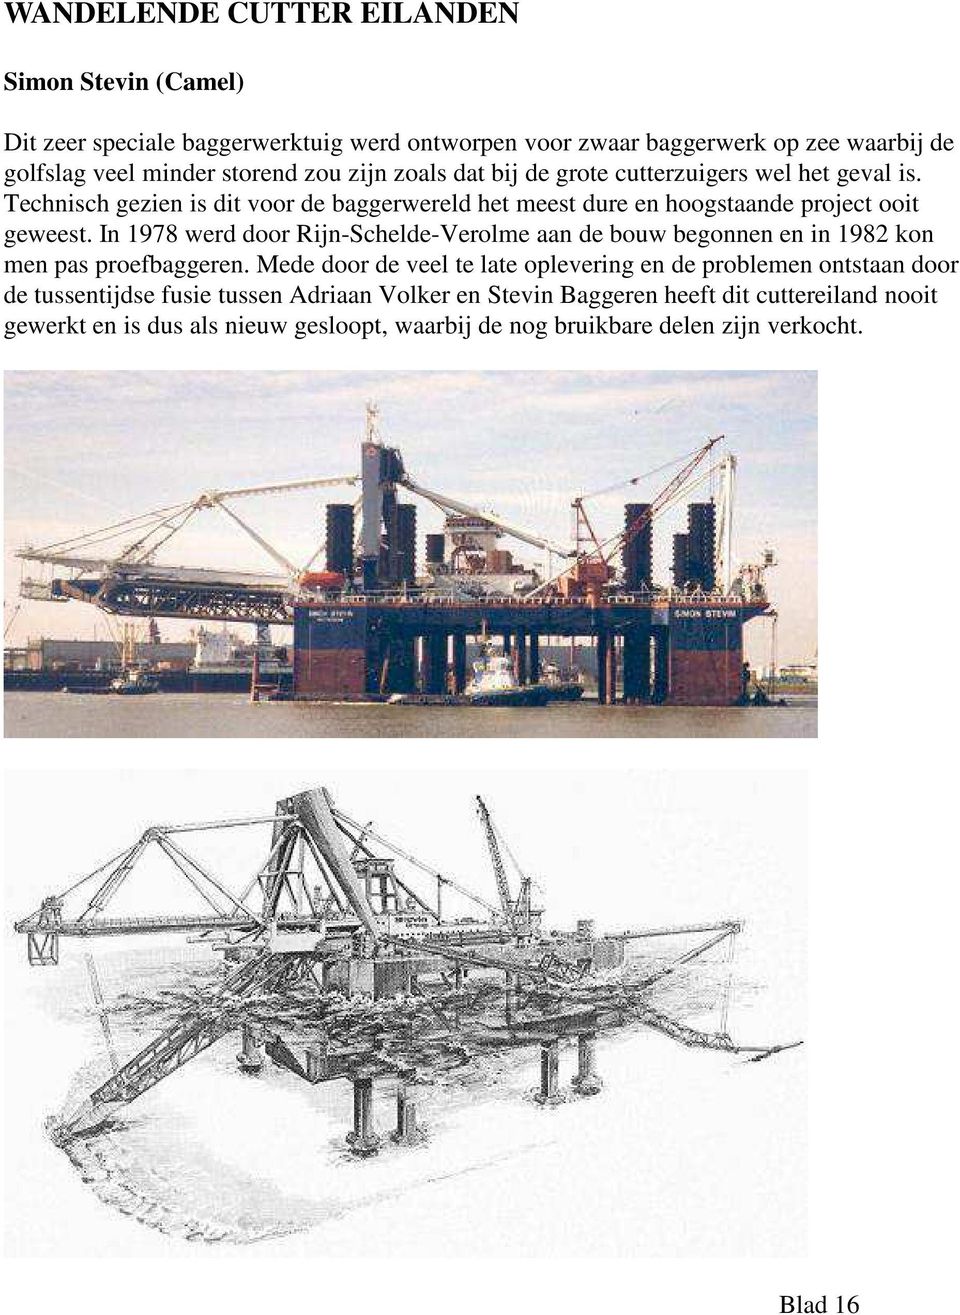 In 1978 werd door Rijn-Schelde-Verolme aan de bouw begonnen en in 1982 kon men pas proefbaggeren.